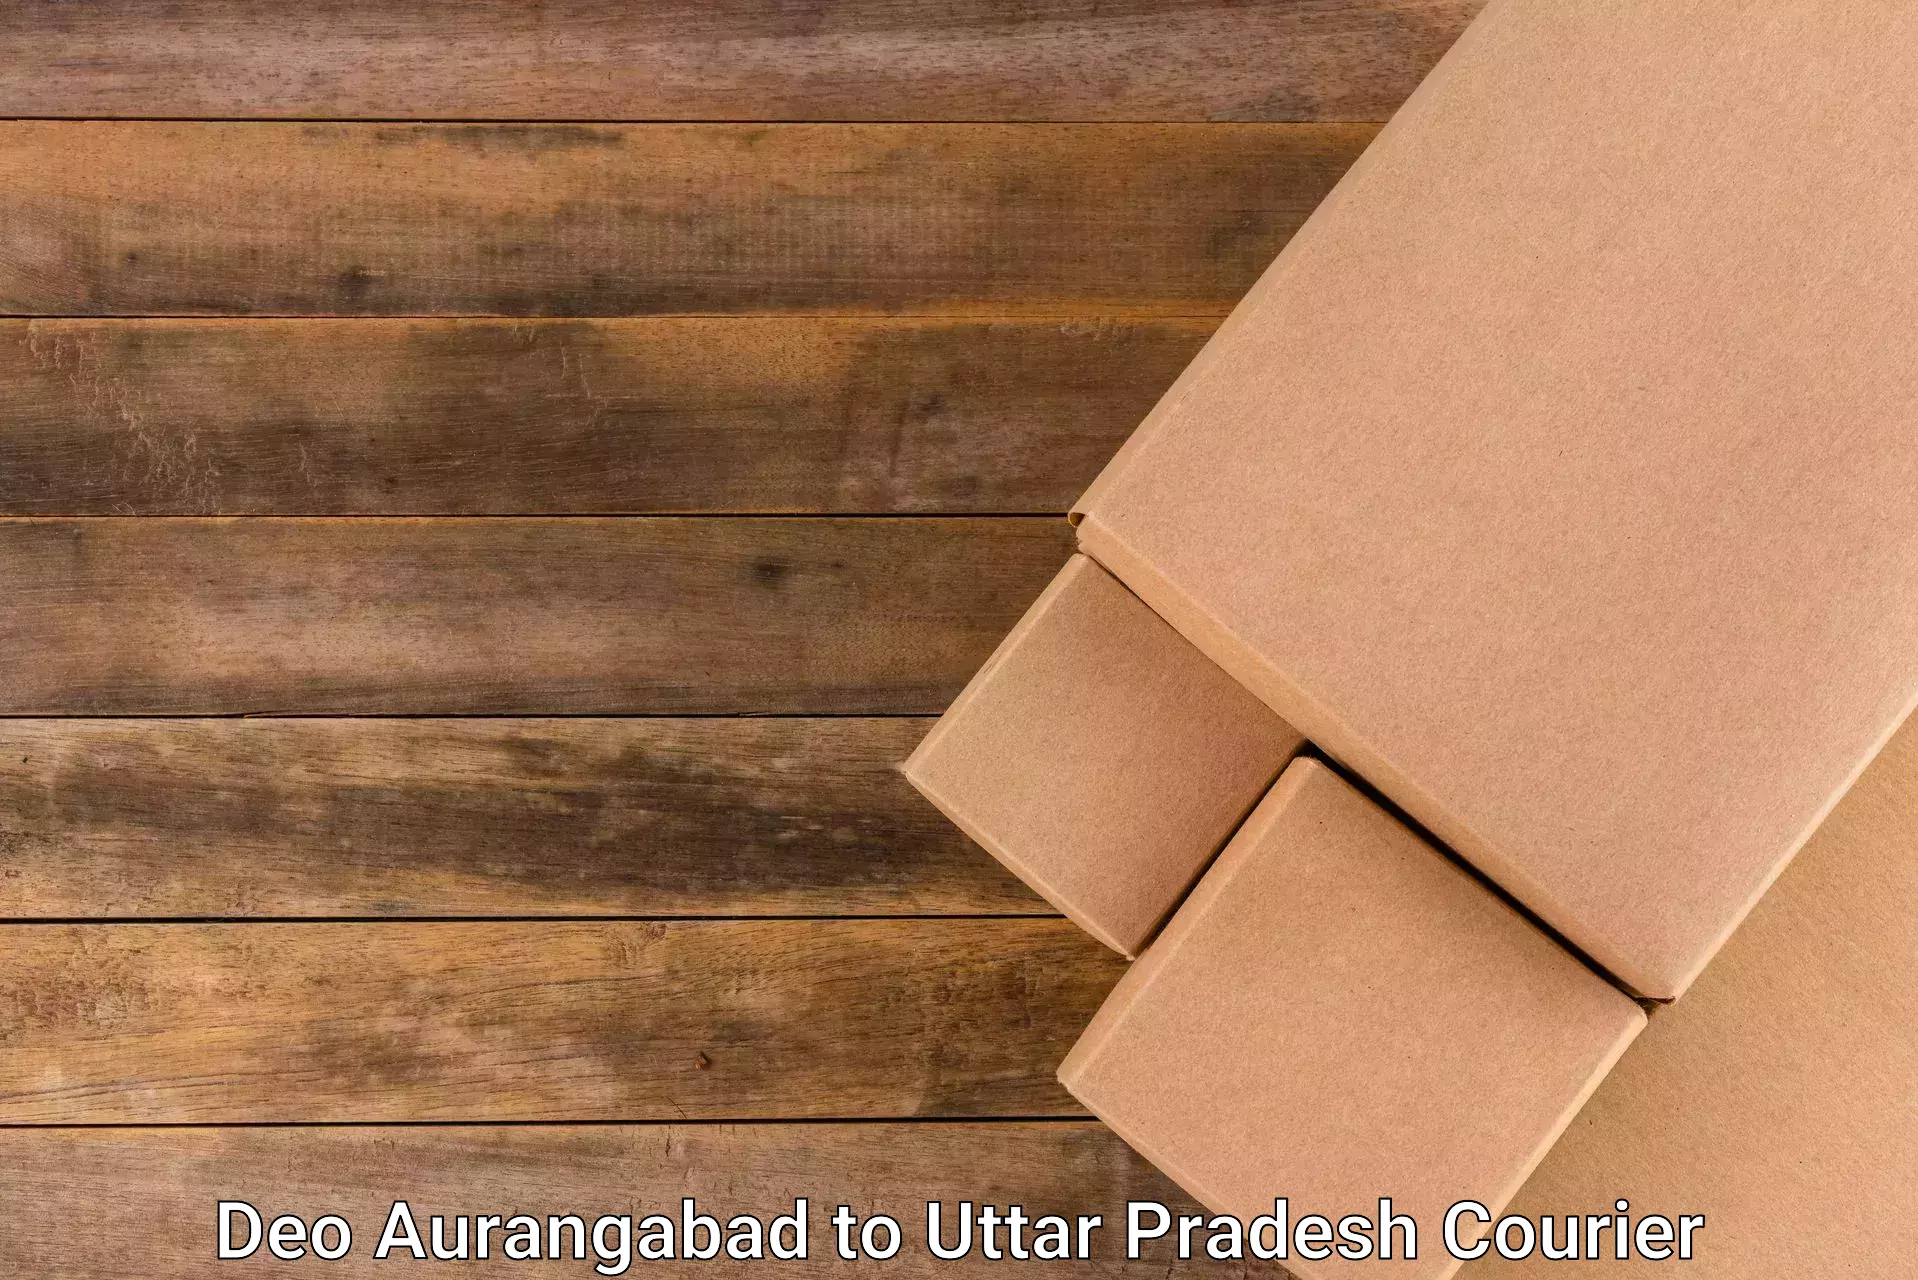 Cost-effective freight solutions Deo Aurangabad to Kuru